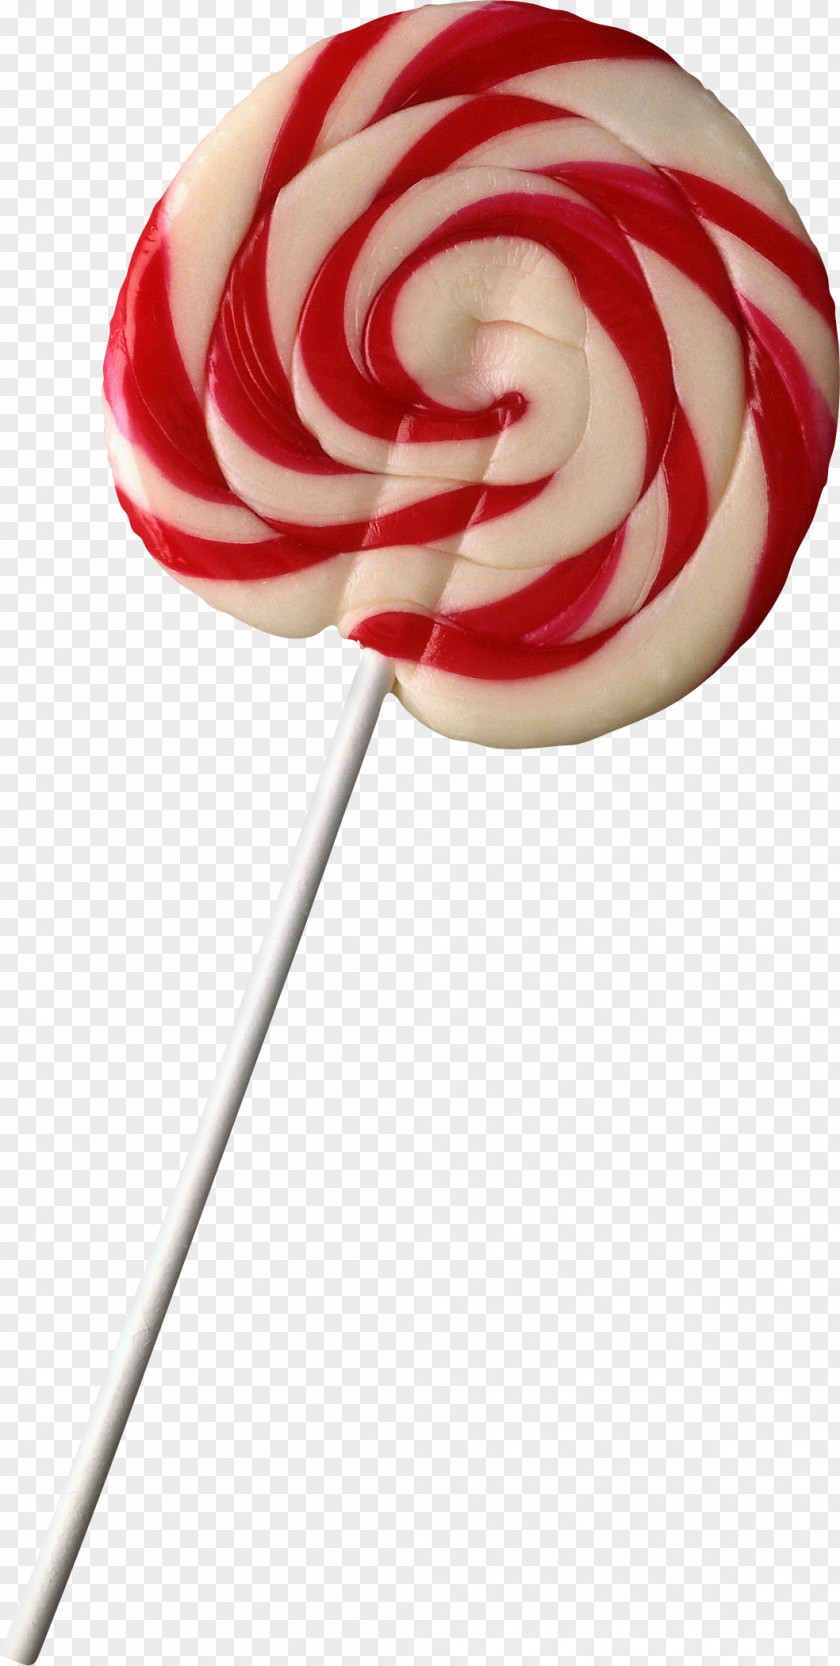 Lollipop Dessert Candy PNG